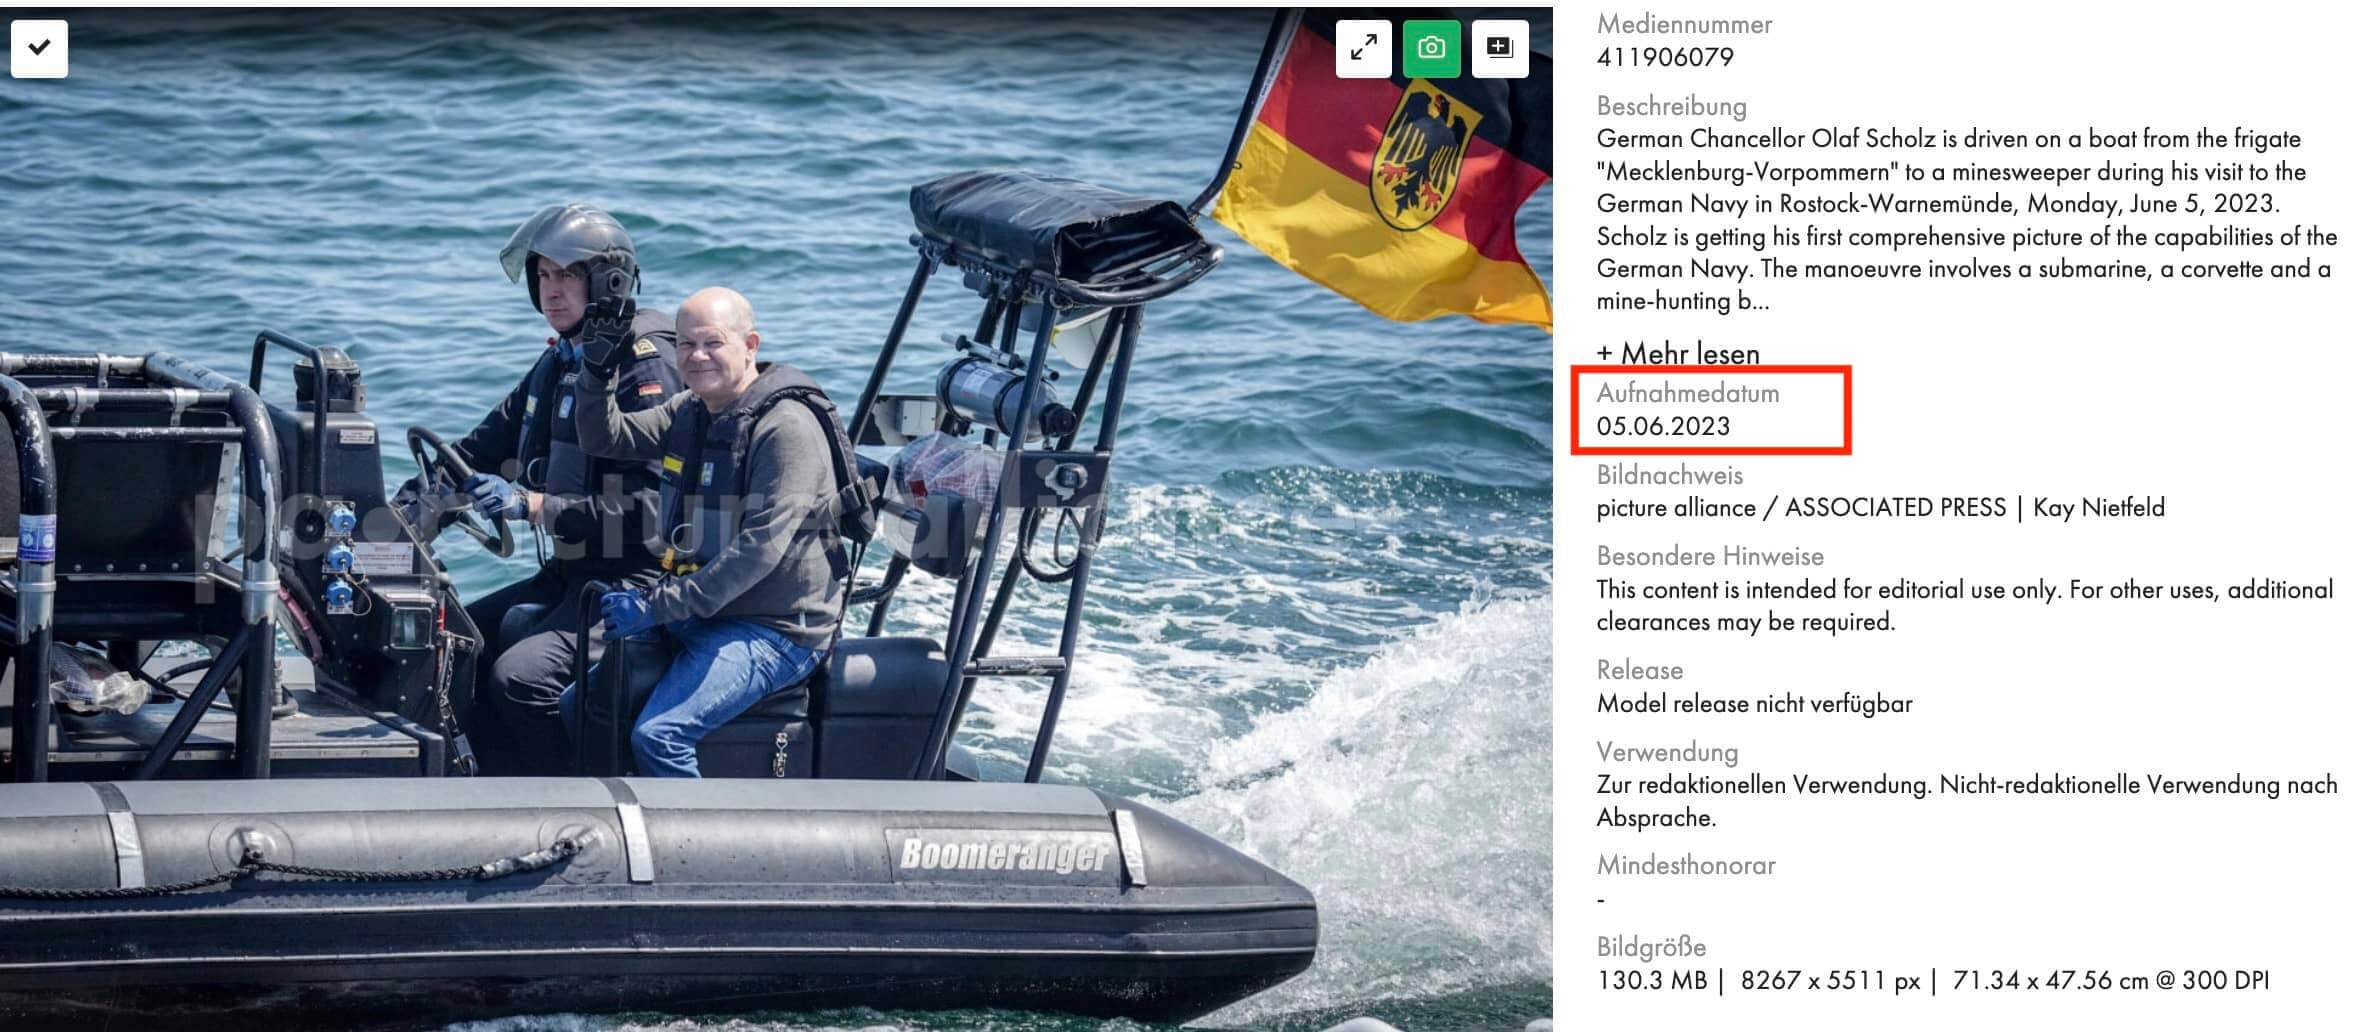 Bundeskanzler Olaf Scholz wird bei seinem Besuch der Deutschen Marine in Rostock-Warnemünde am Montag, 5. Juni 2023, auf einem Boot von der Fregatte "Mecklenburg-Vorpommern" zu einem Minensuchboot gefahren. Das Boot hat den Namen Boomeranger, Scholz lächelt und winkt. Als Aufnahmedatum ist in der Bilddatenbank der 5. Juni angegeben.